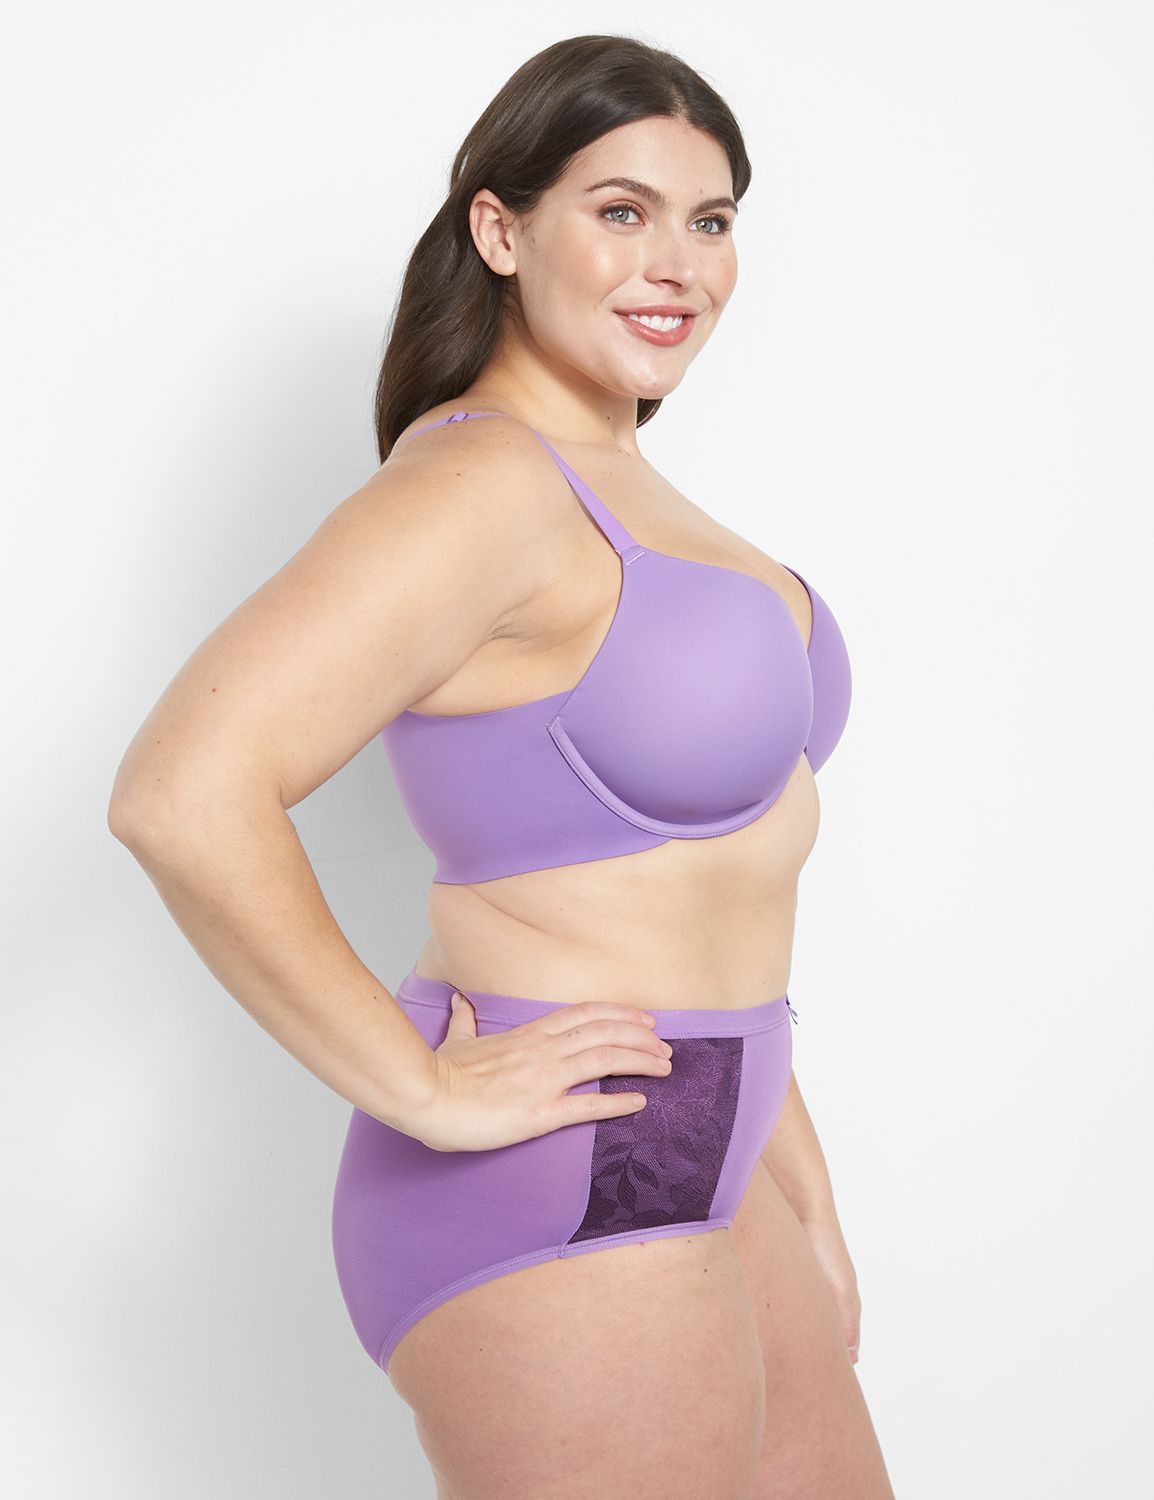 Fashion underwear cacique purple aesthetic crease bra 4 breasted